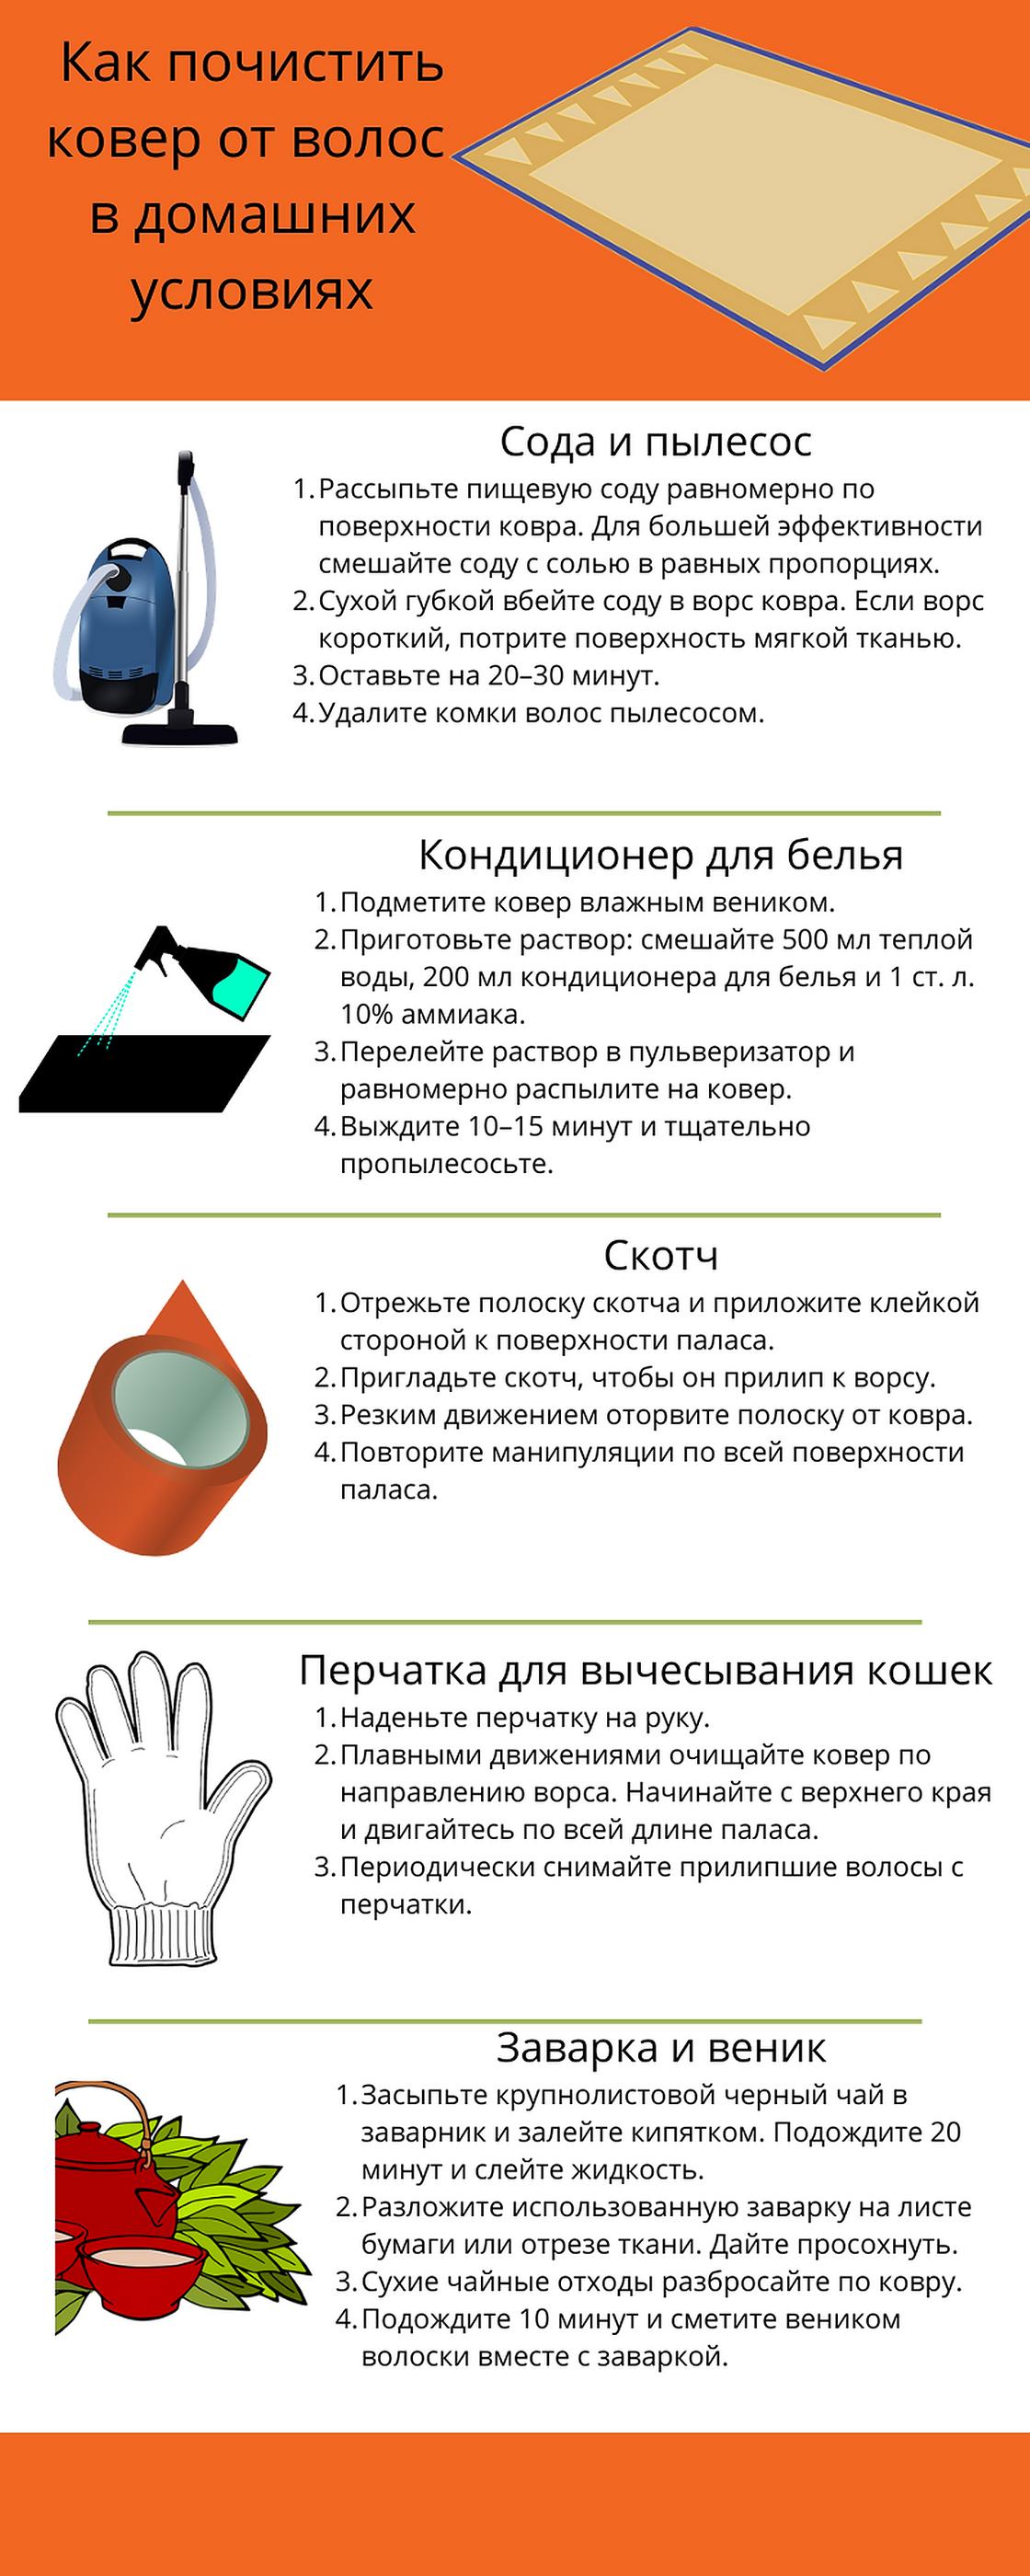 Инфографика: как почистить ковер от волос